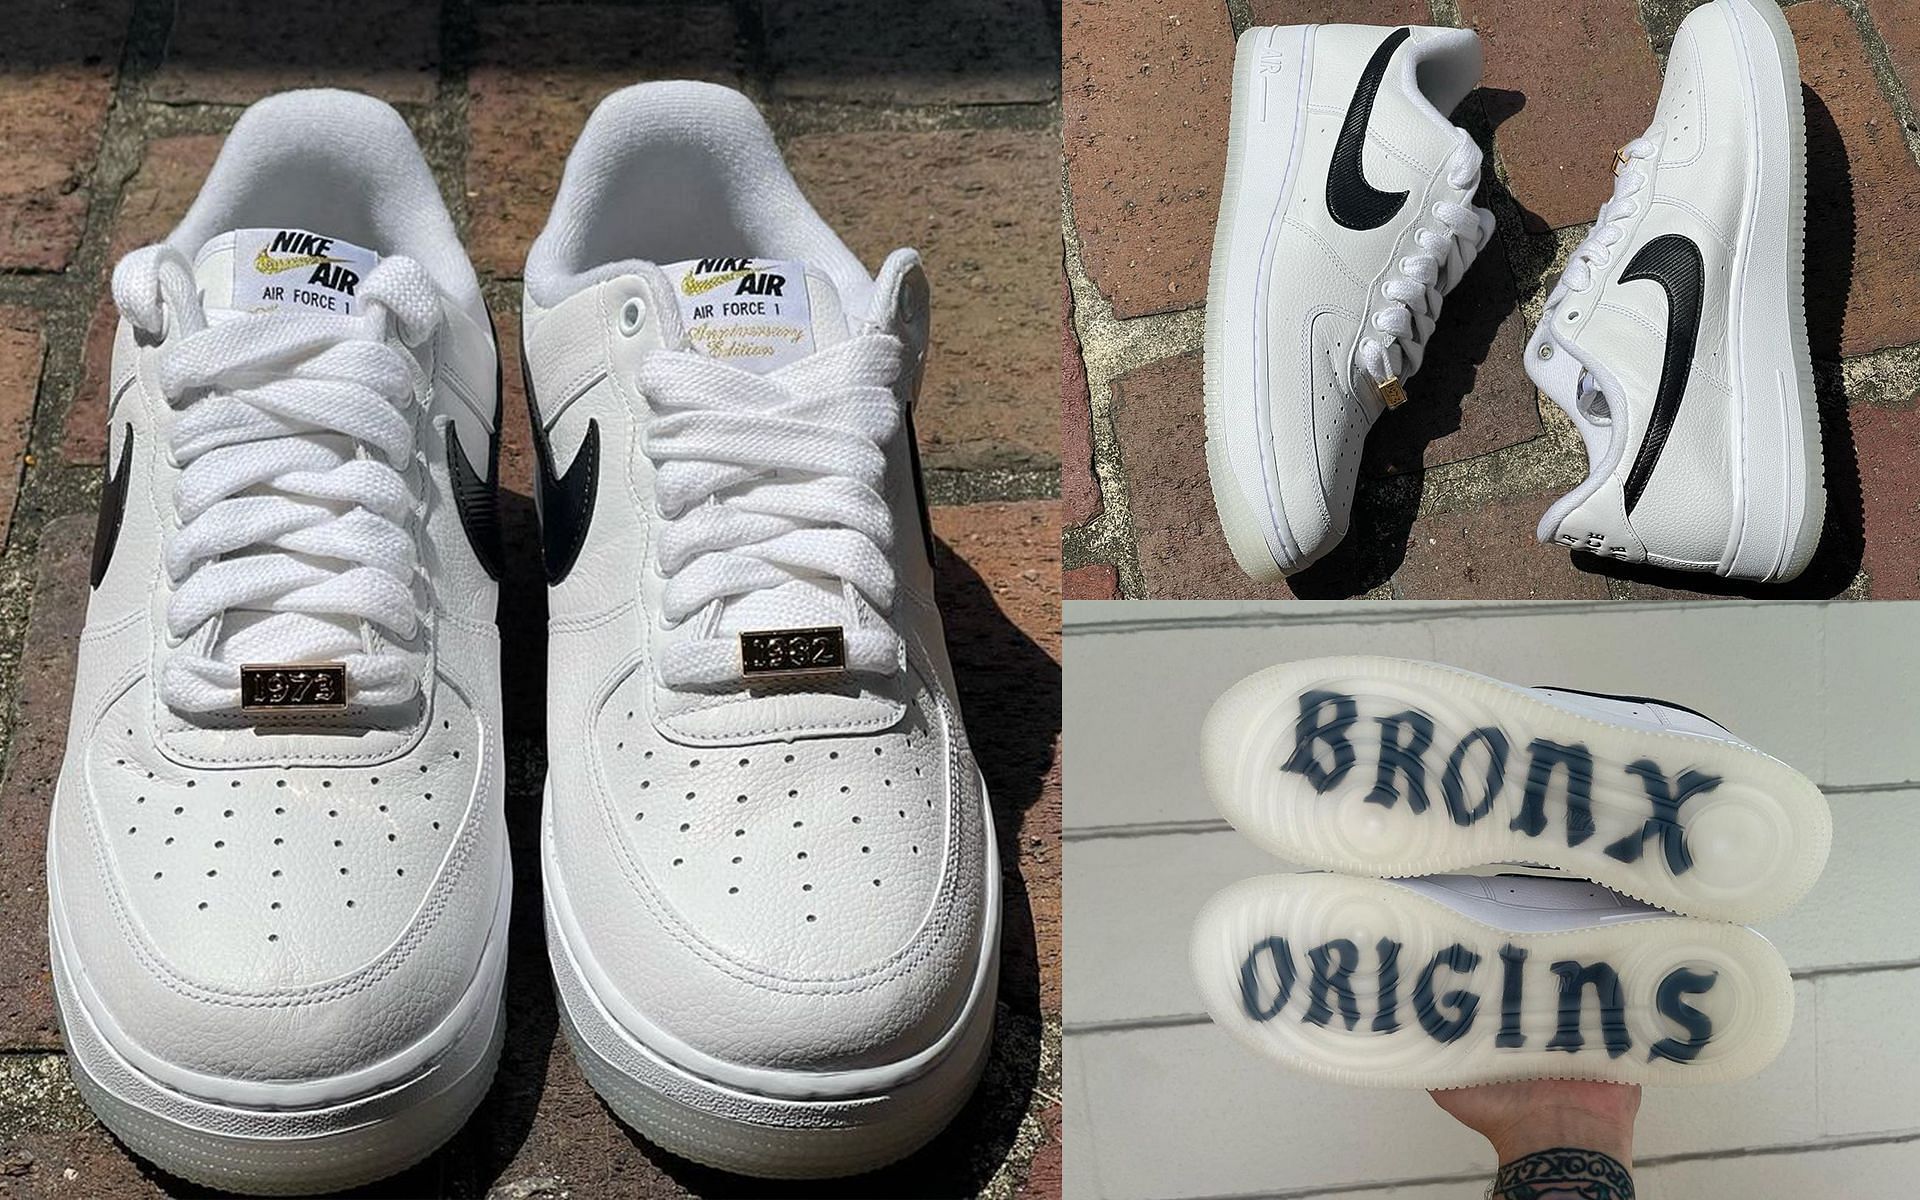 Nike Air Force 1 Bronx Origins (Image via @teddysoles/ Instagram)